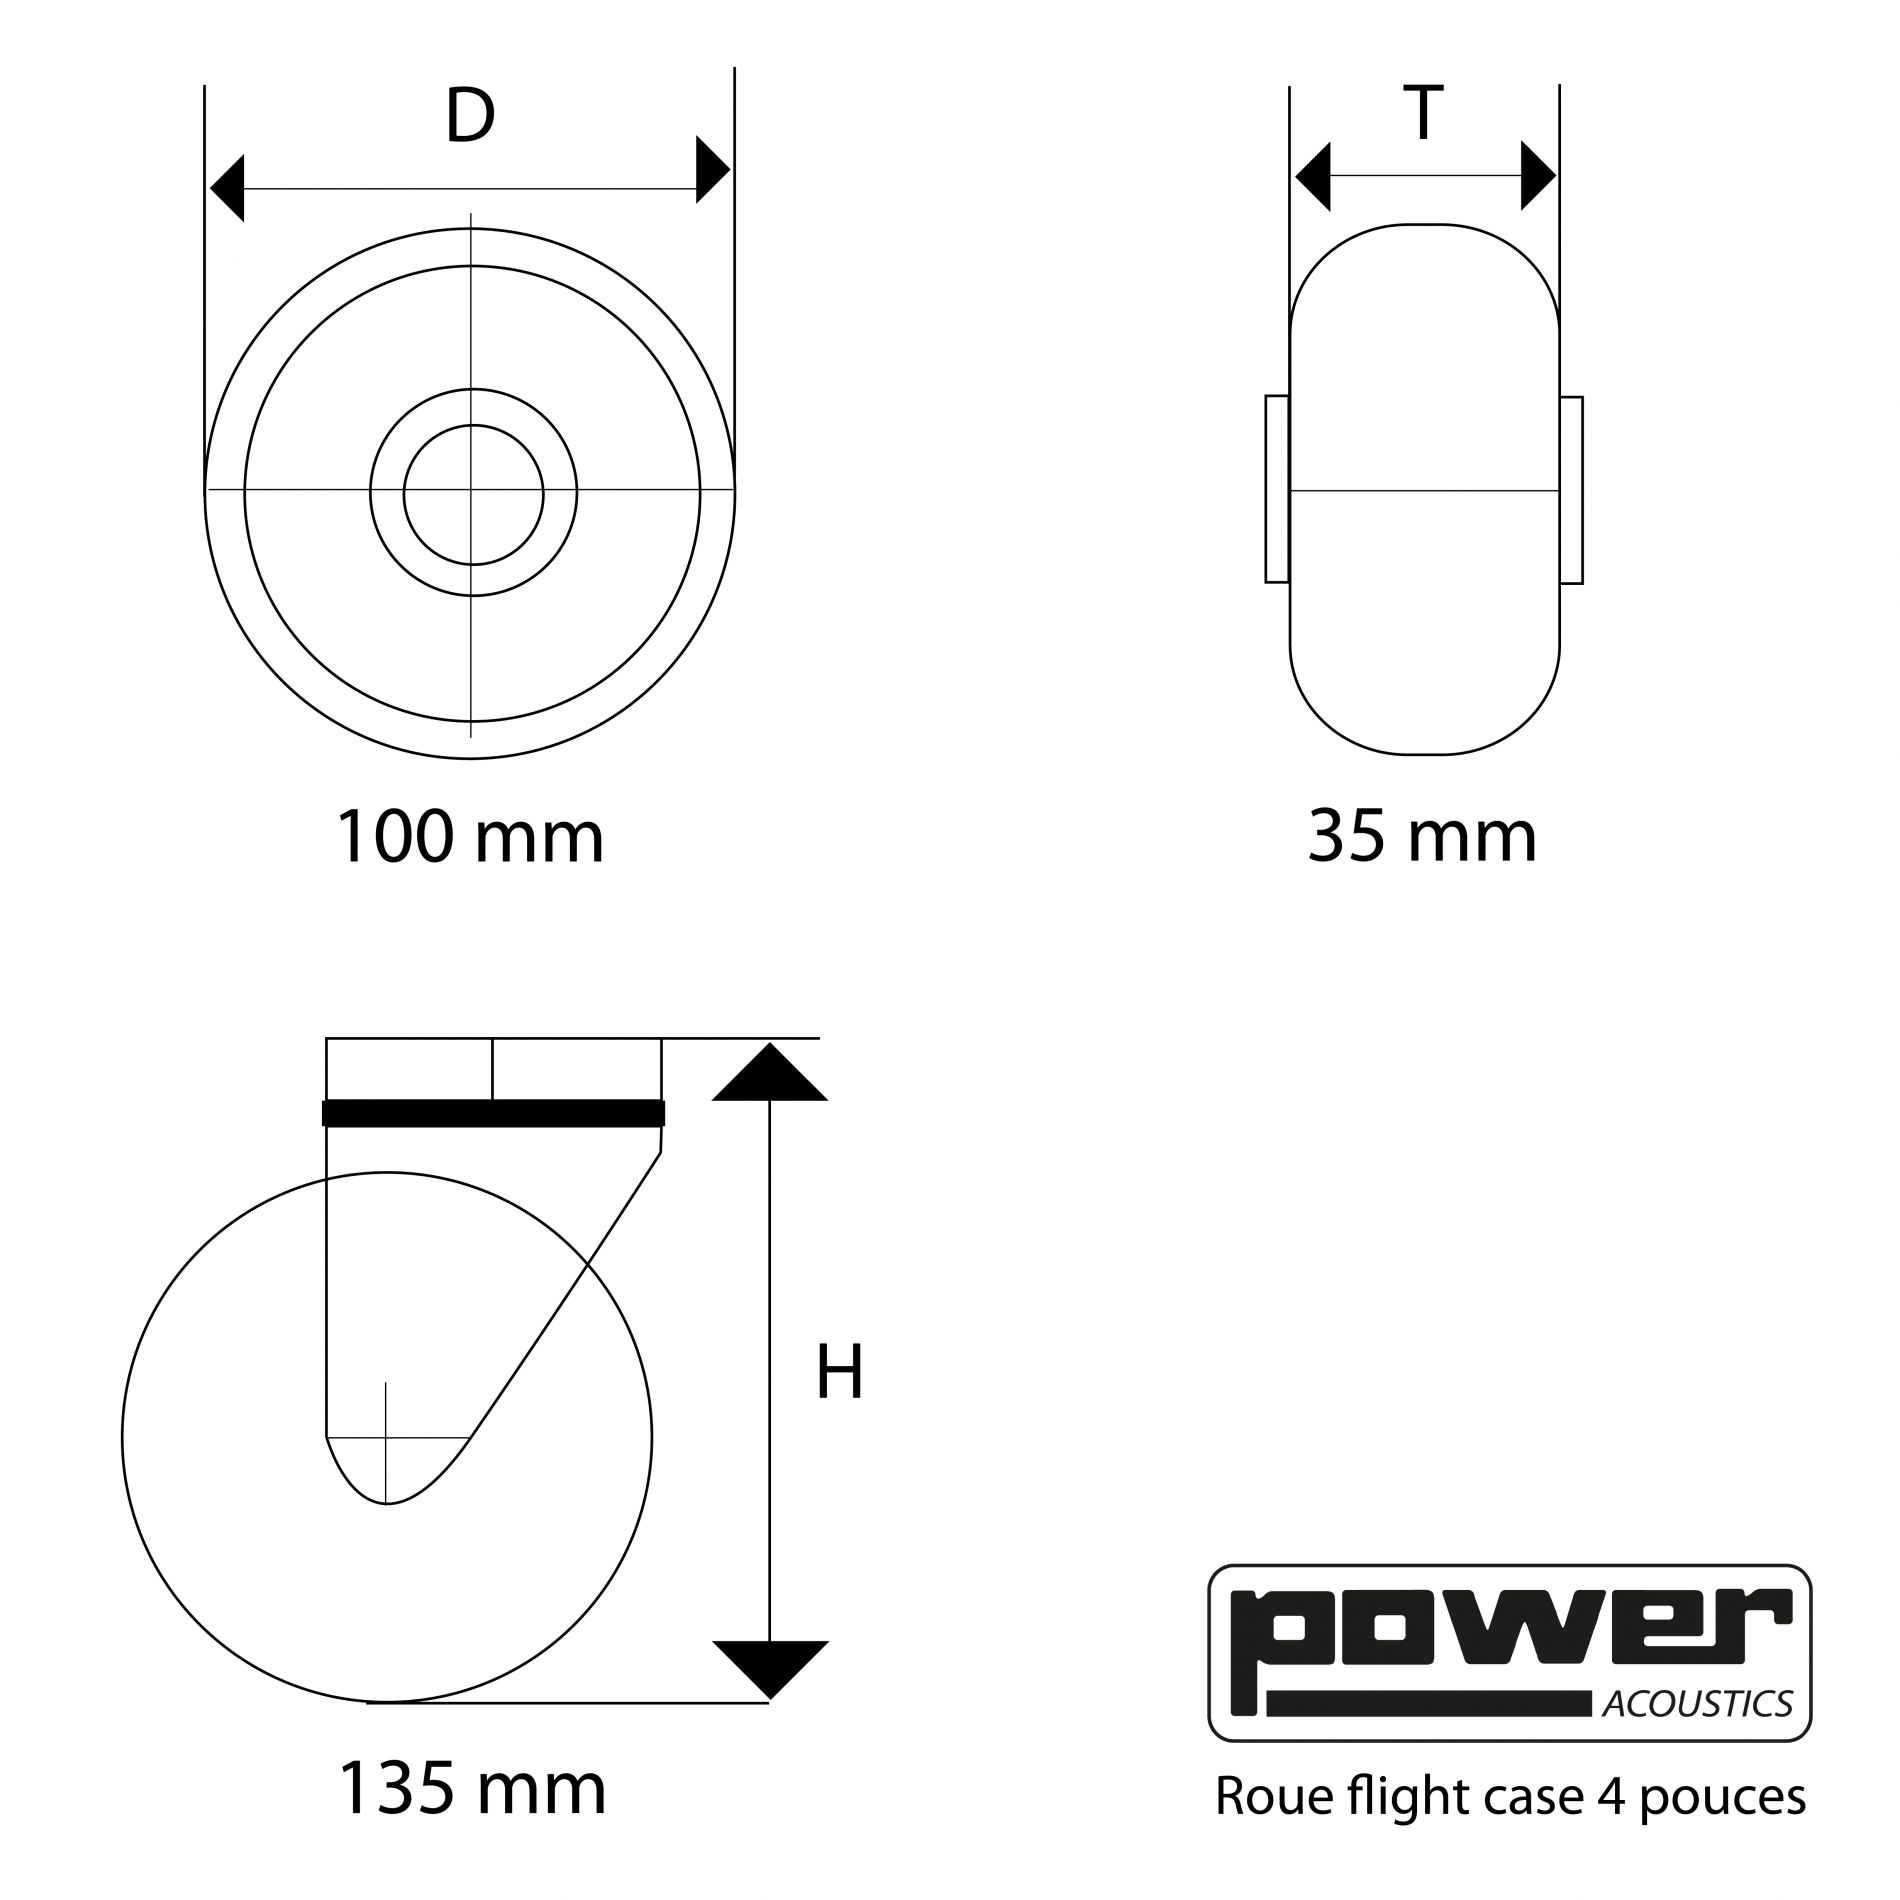 Power Acoustics Roue Flight Case 4 Pouces - - Flight Case & Koffer für Lichtequipment - Variation 2